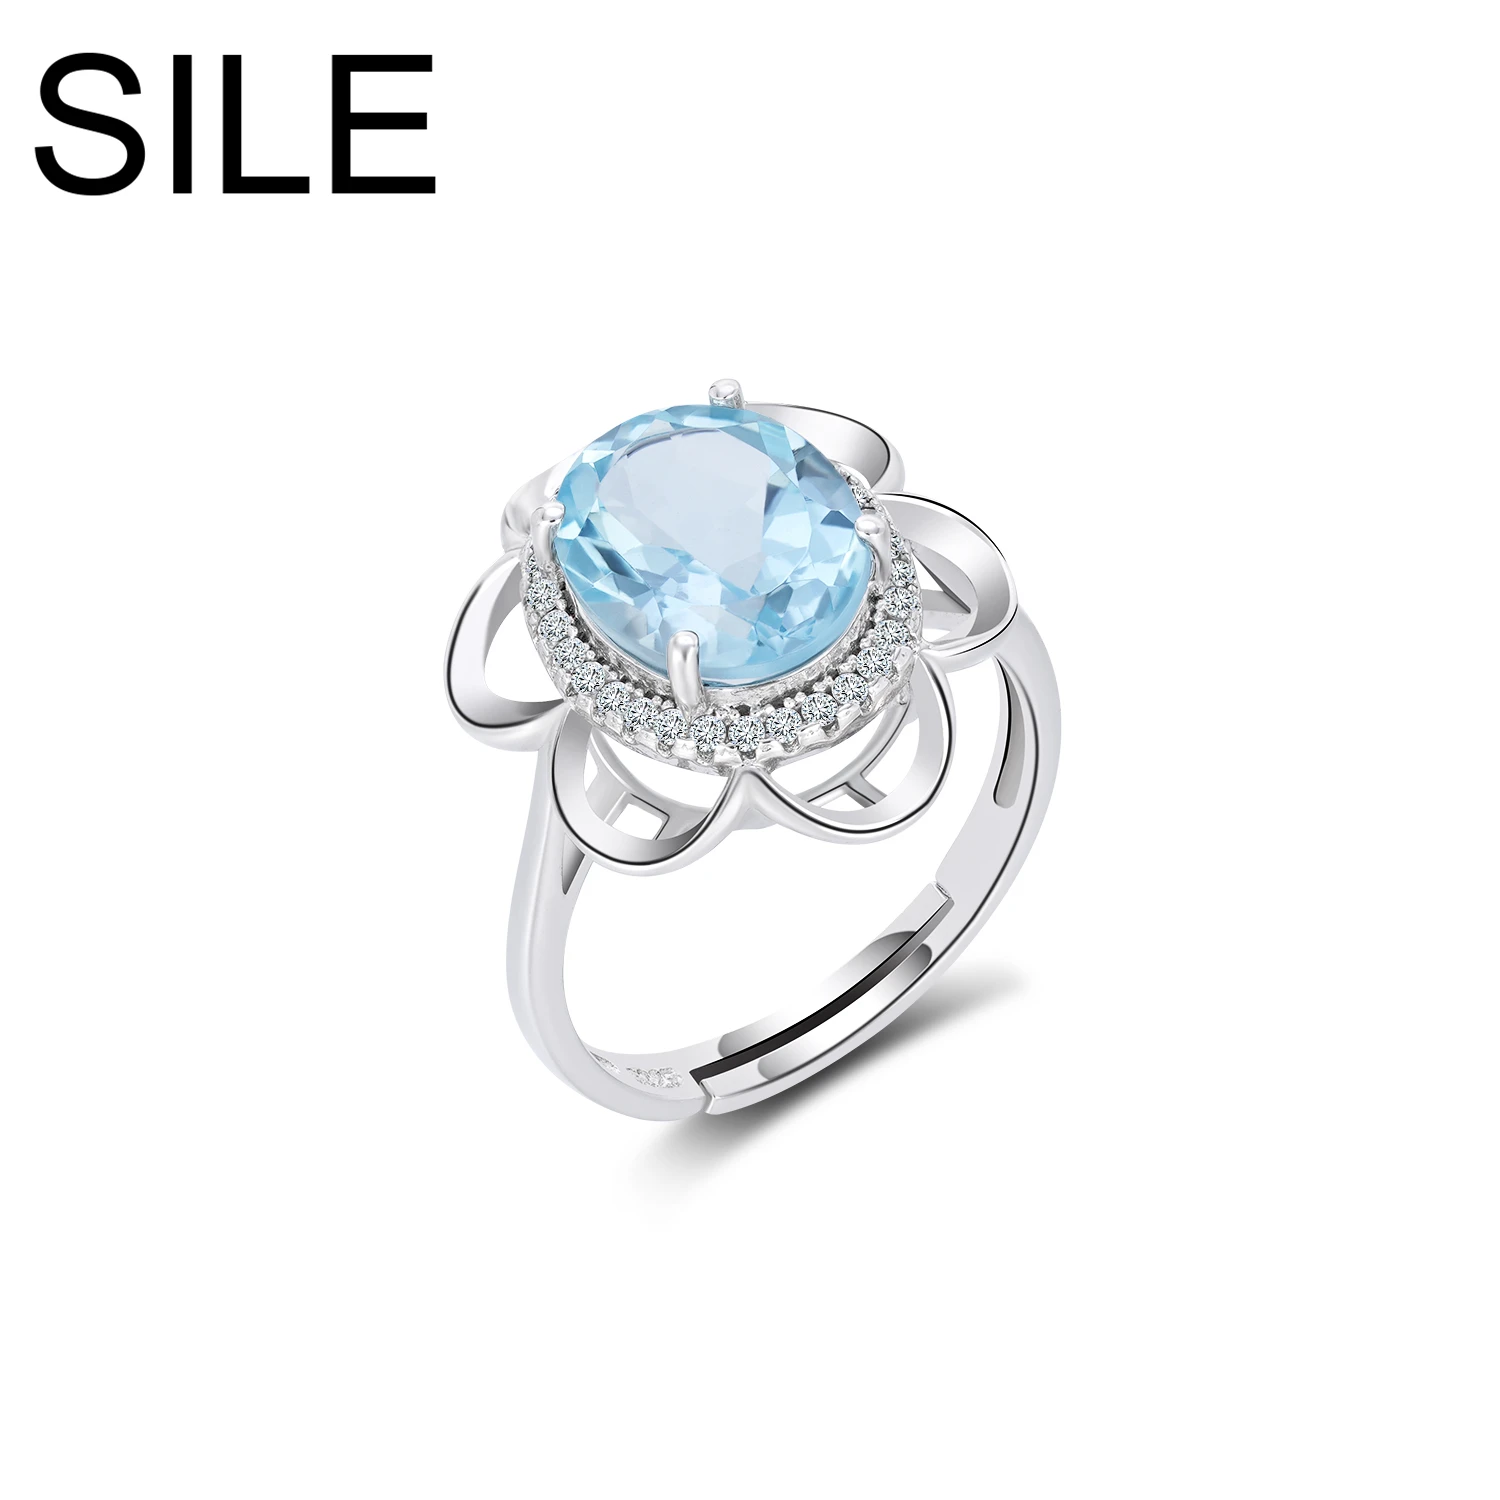 

Женское регулируемое кольцо из серебра 925 пробы, с натуральным голубым топазом